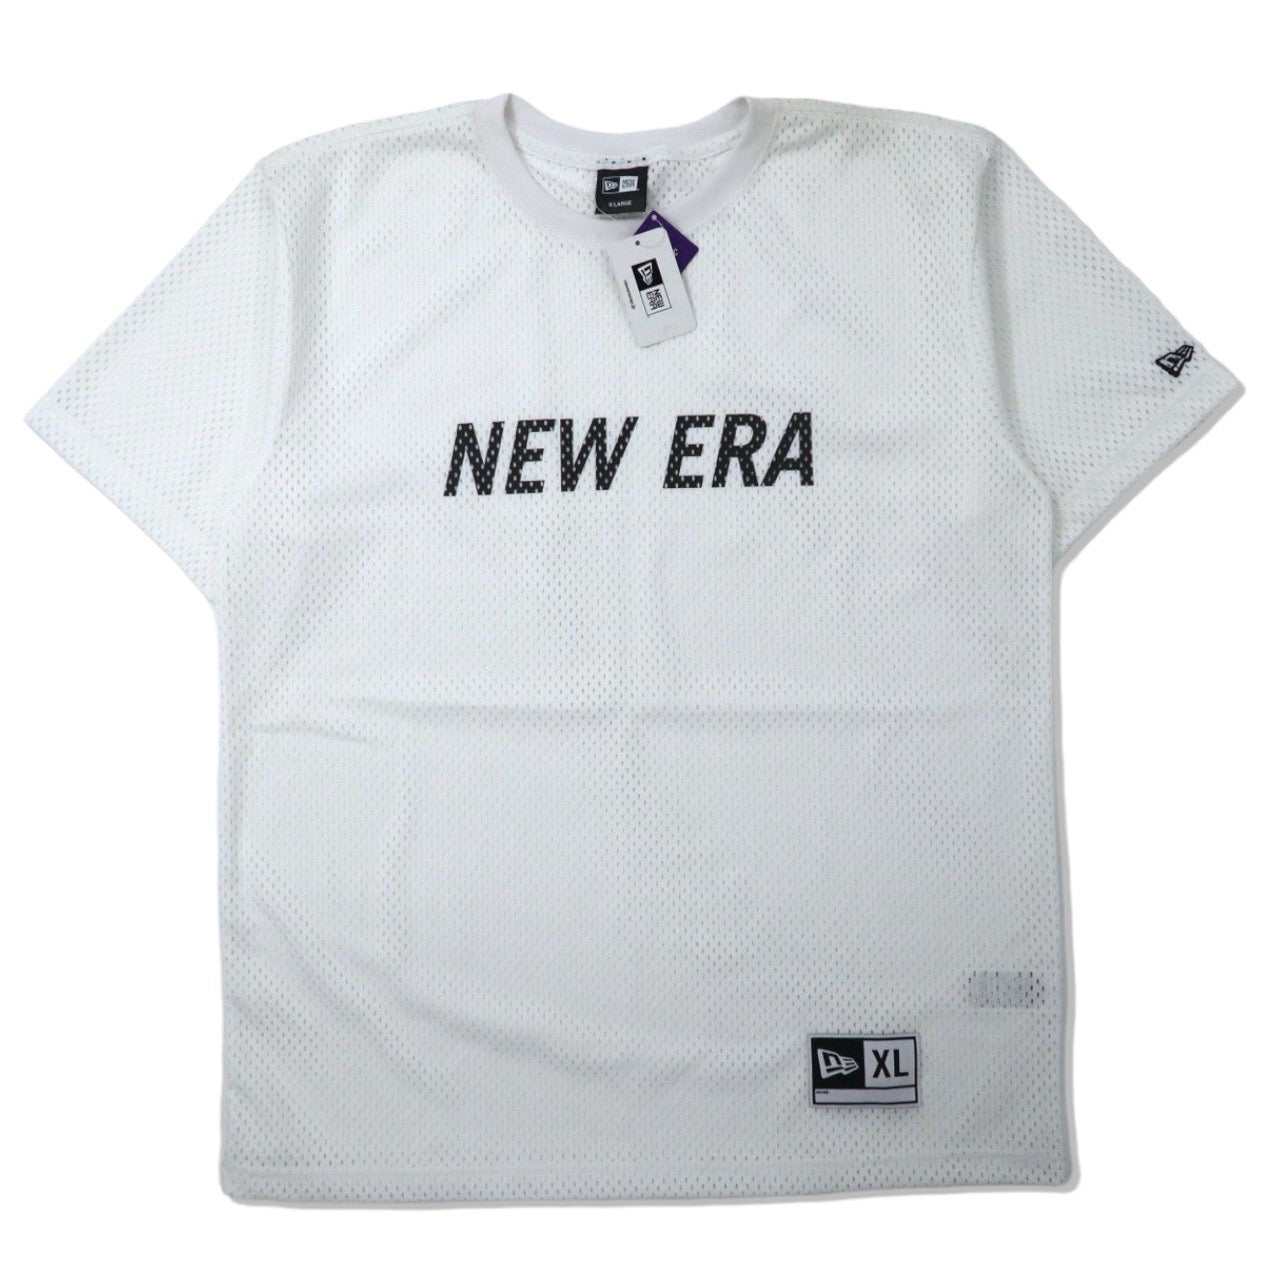 NEWERA ビッグサイズ メッシュTシャツ XL ホワイト ポリエステル SS ...